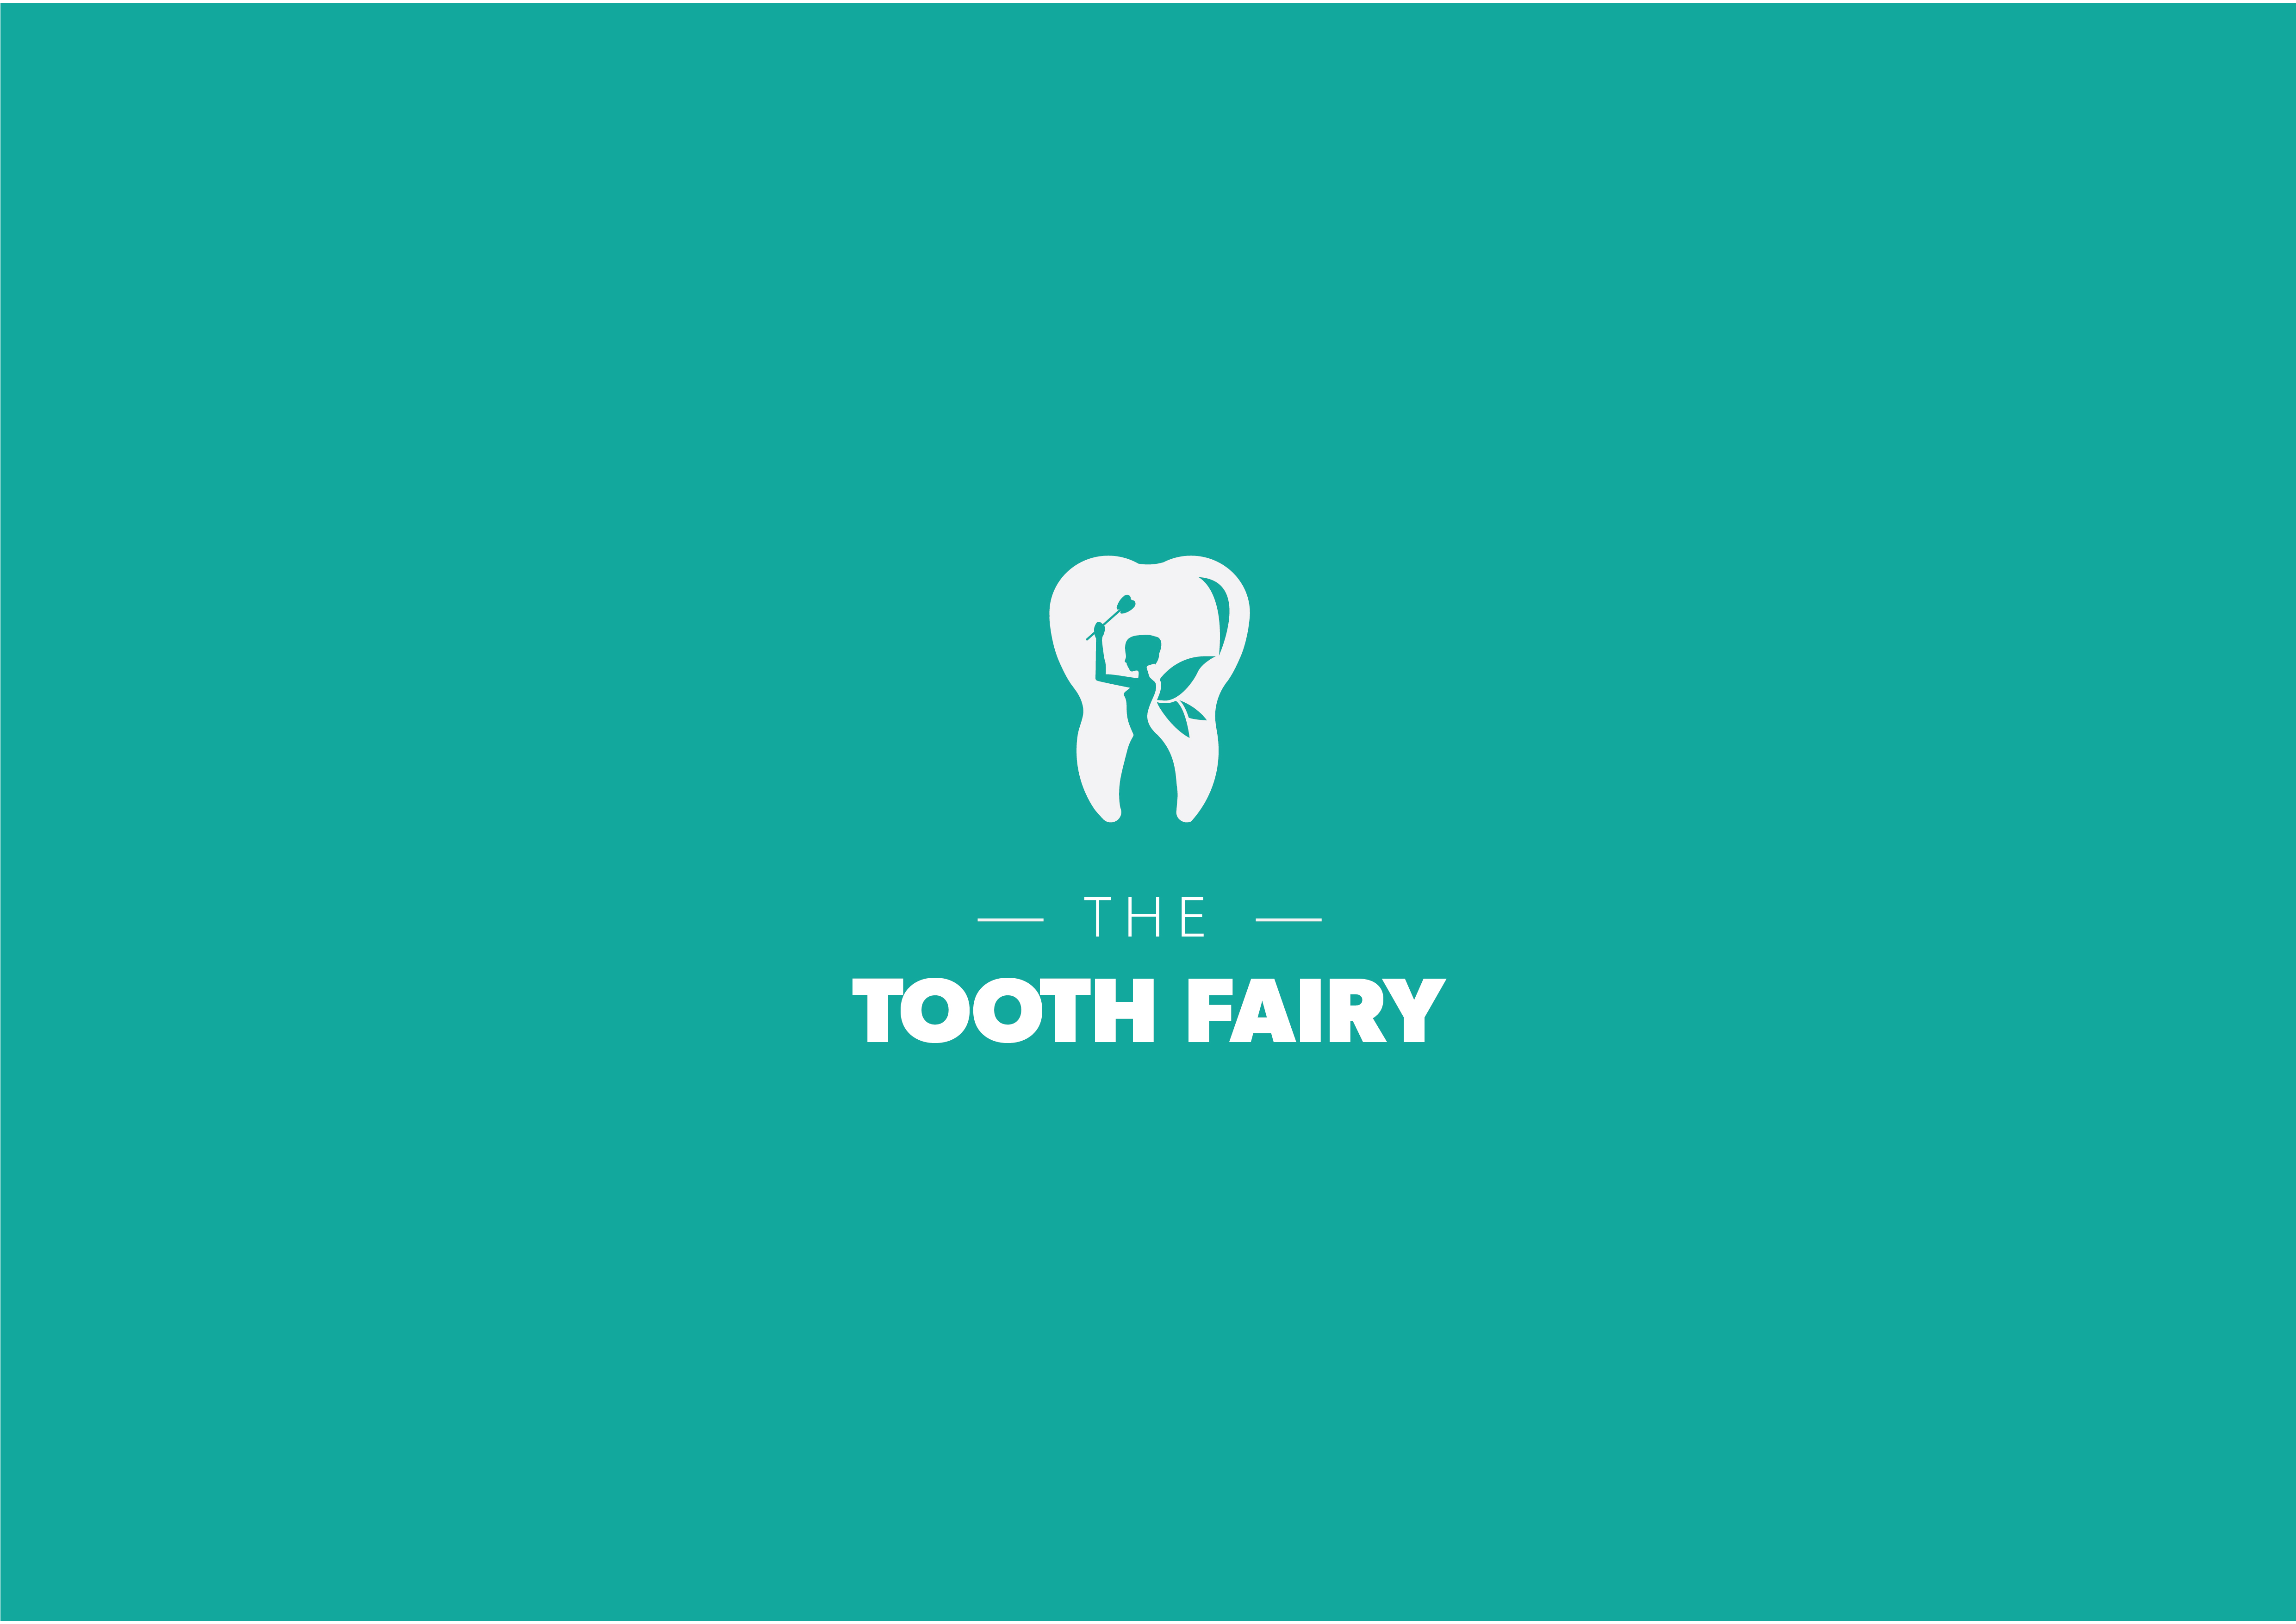 toothfairy teeth